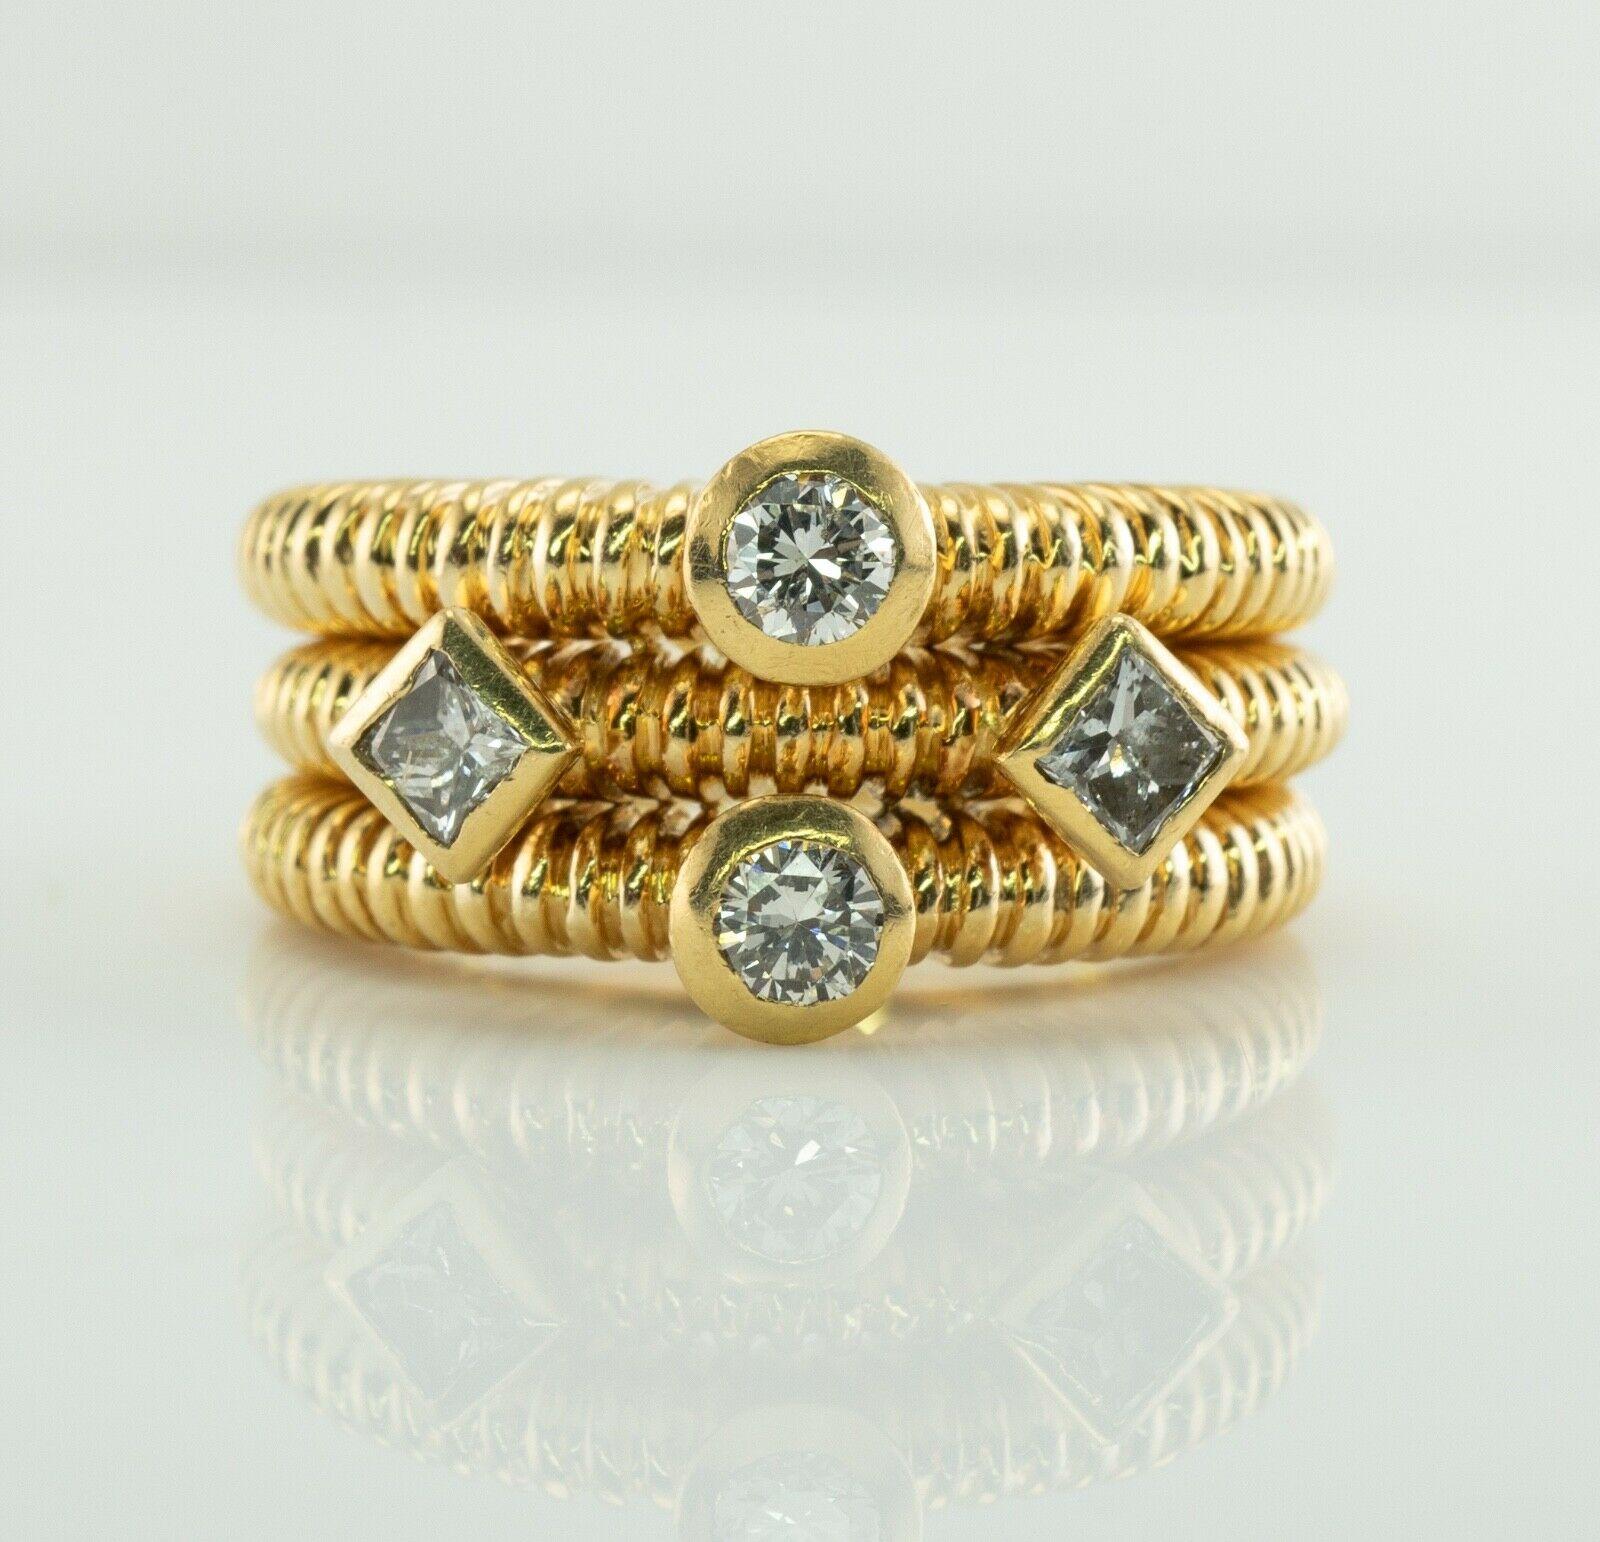 Dieser ungewöhnliche Vintage-Ring ist aus massivem 18-karätigem Gelbgold gefertigt.
Er ist mit zwei runden Diamanten im Brillantschliff und zwei Diamanten im Prinzessinnenschliff besetzt.
Runde Diamanten von insgesamt 0,16 Karat, Reinheit VS2 und